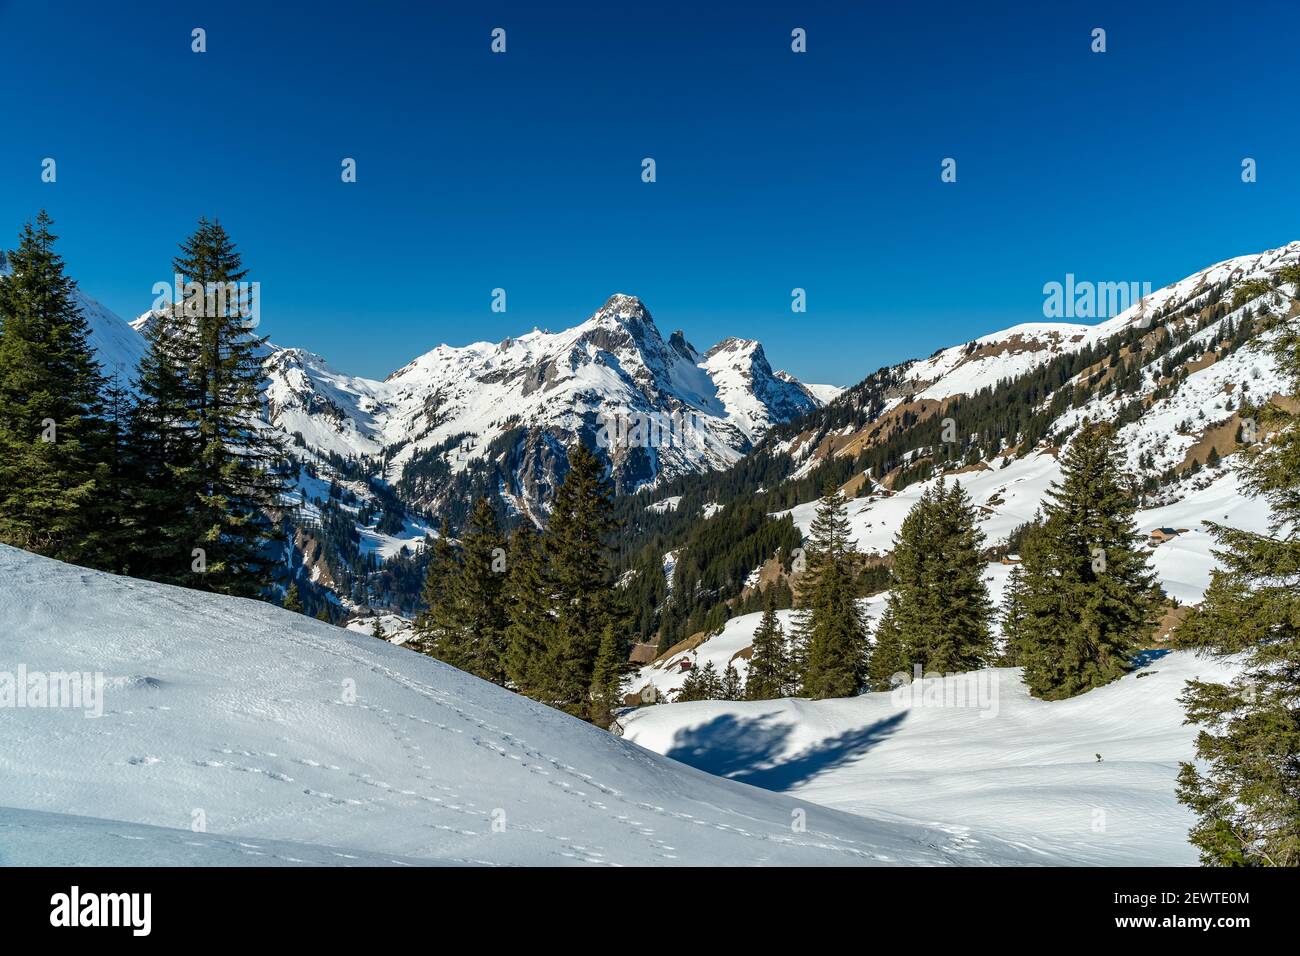 Schneeschuhsuren im verschneiten Bregenzerwald. Pistes de raquettes dans la forêt enneigée de Bregenz. Montagnes enneigées avec sapins, paradis hivernal Banque D'Images